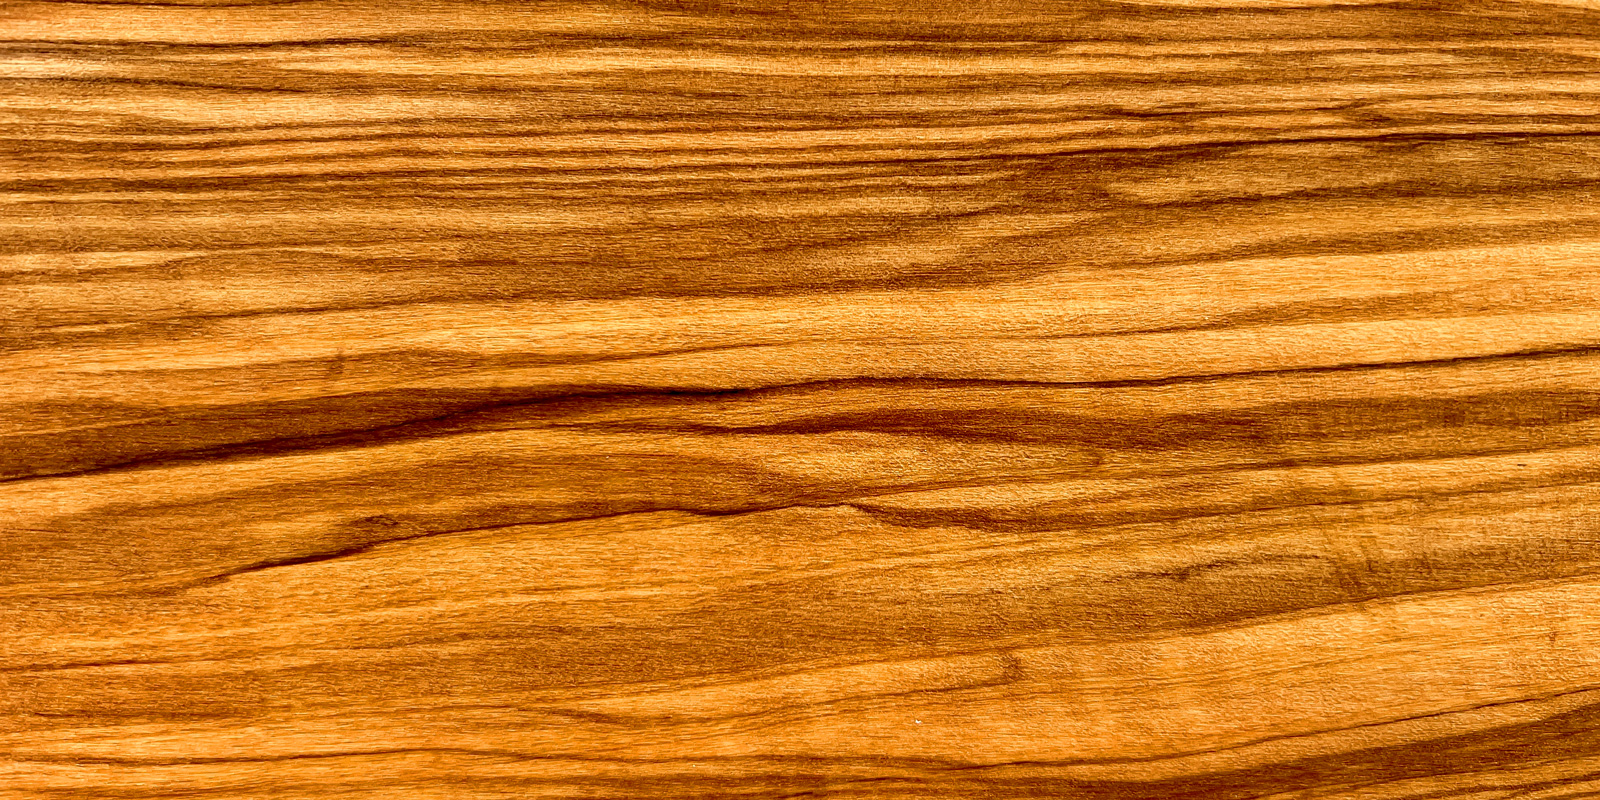 Produtos de madeira de oliveira Pecas em madeira de oliveira lindamente granuladas que trazem um tom quente a mesa.